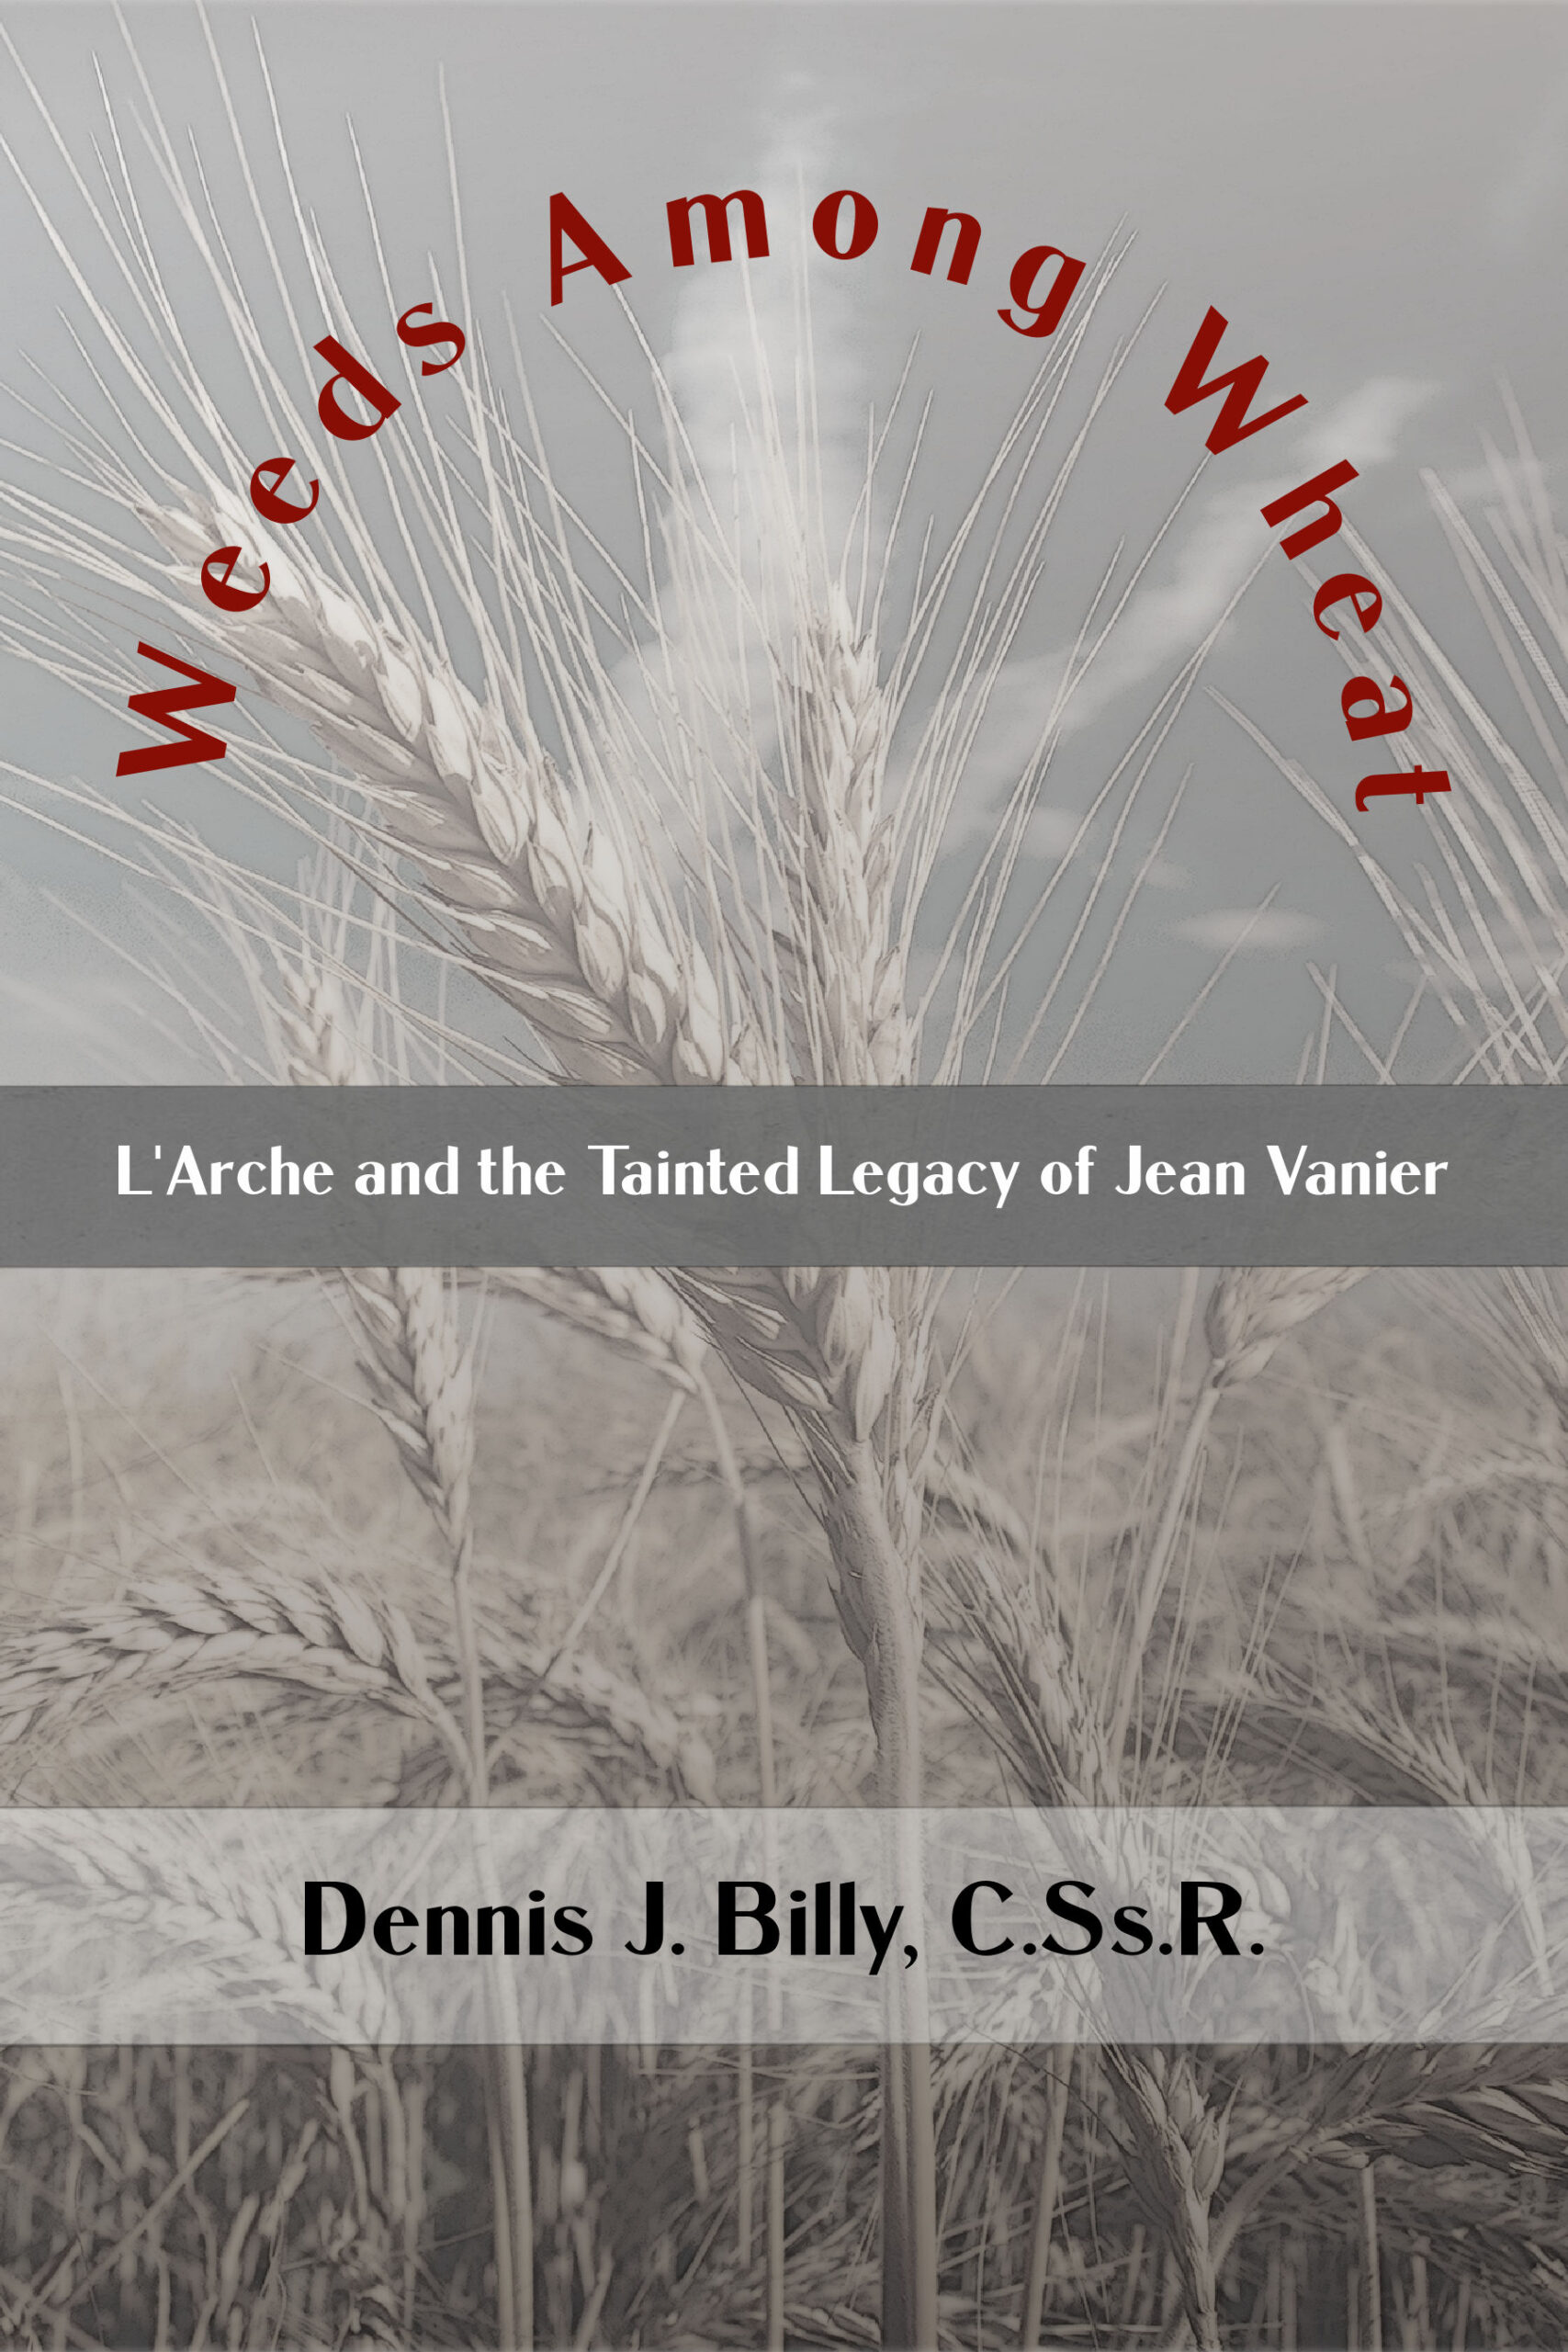 Weeds Among Wheat